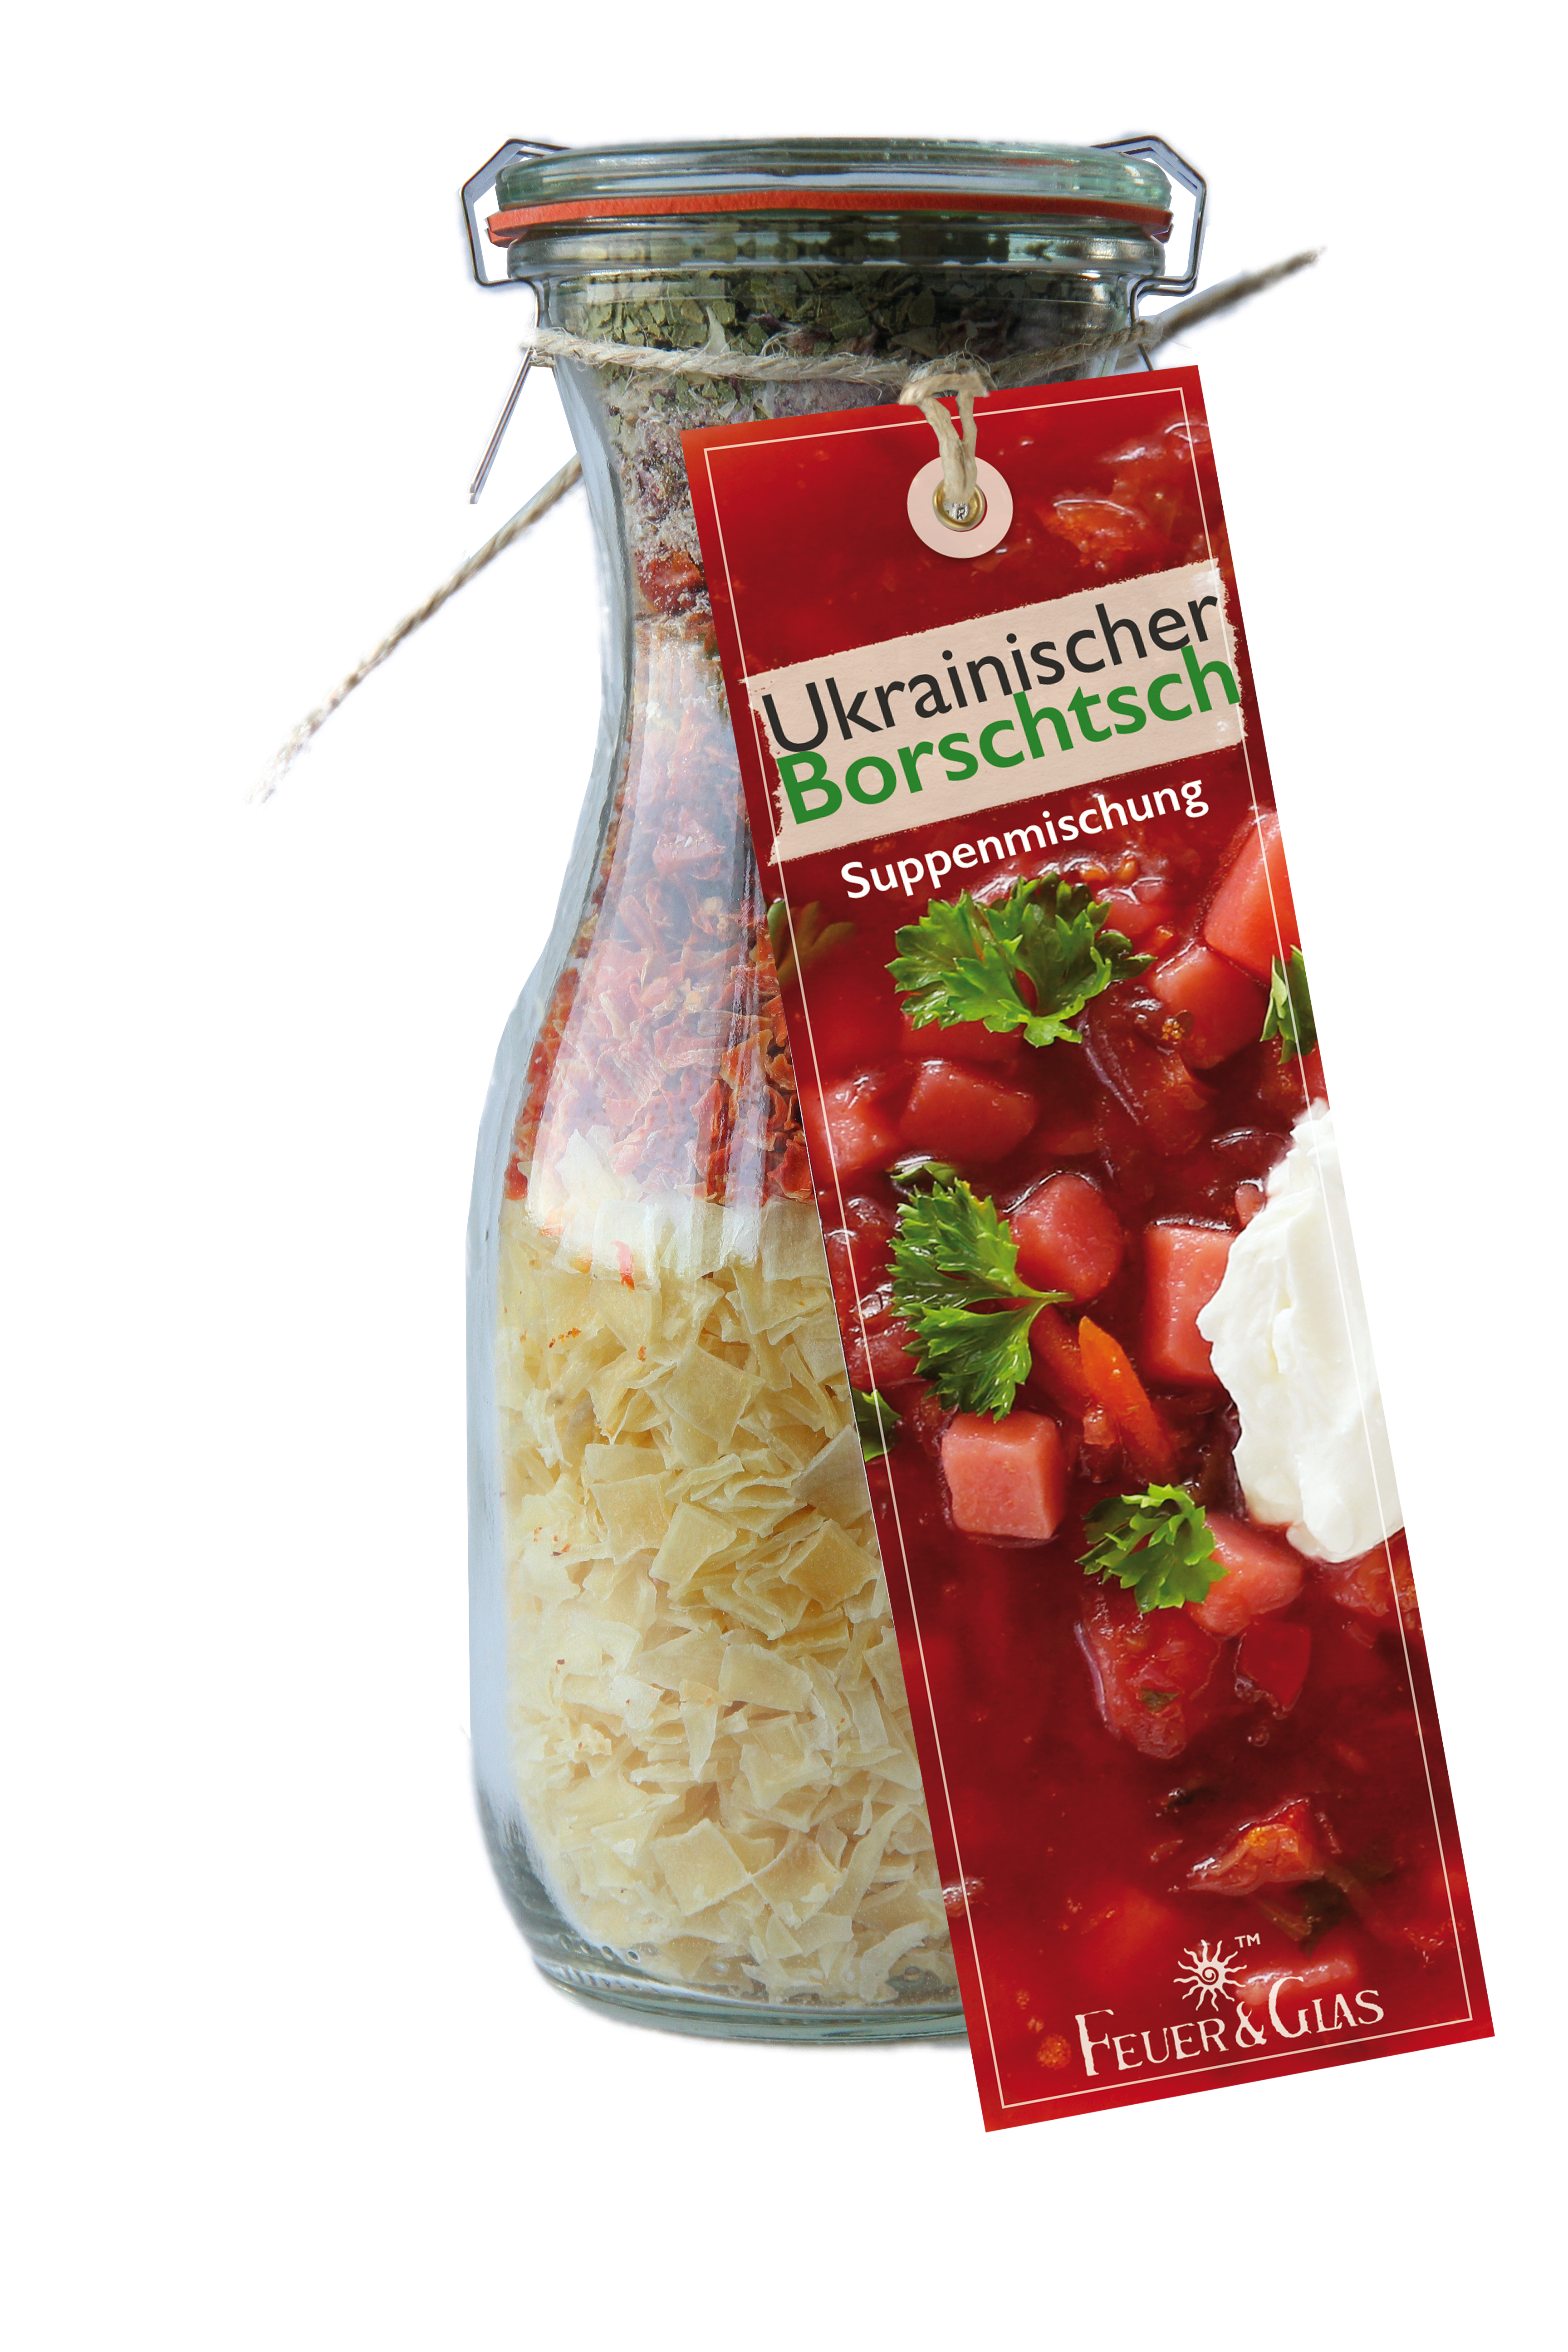  Borschtsch, die ukrainische Suppe